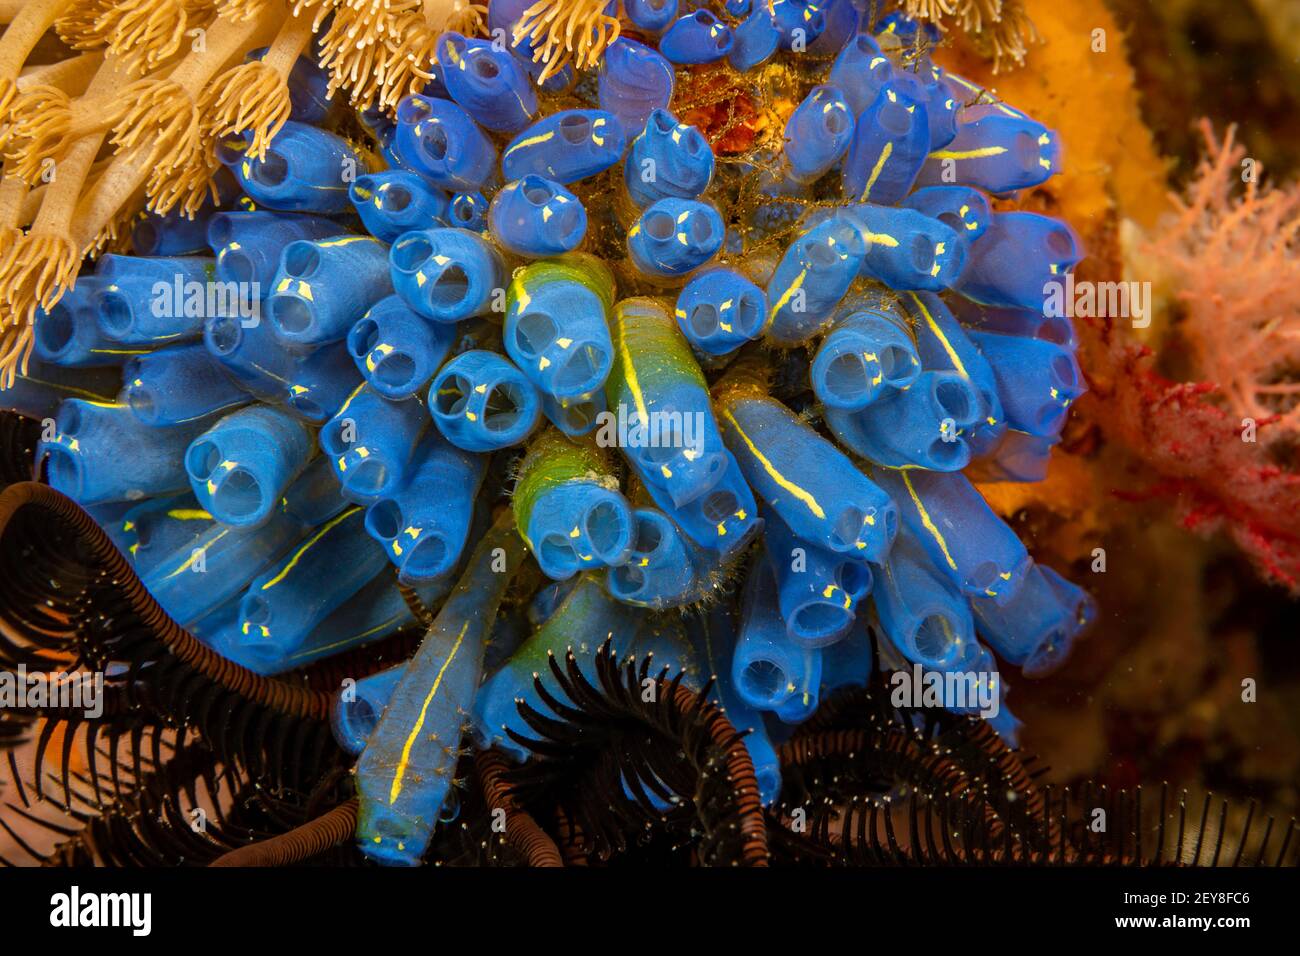 Eine Kolonie von Tunikaten, Clavelina robusta, auch bekannt als Seetaucher, oder ascidian, Philippinen. Stockfoto